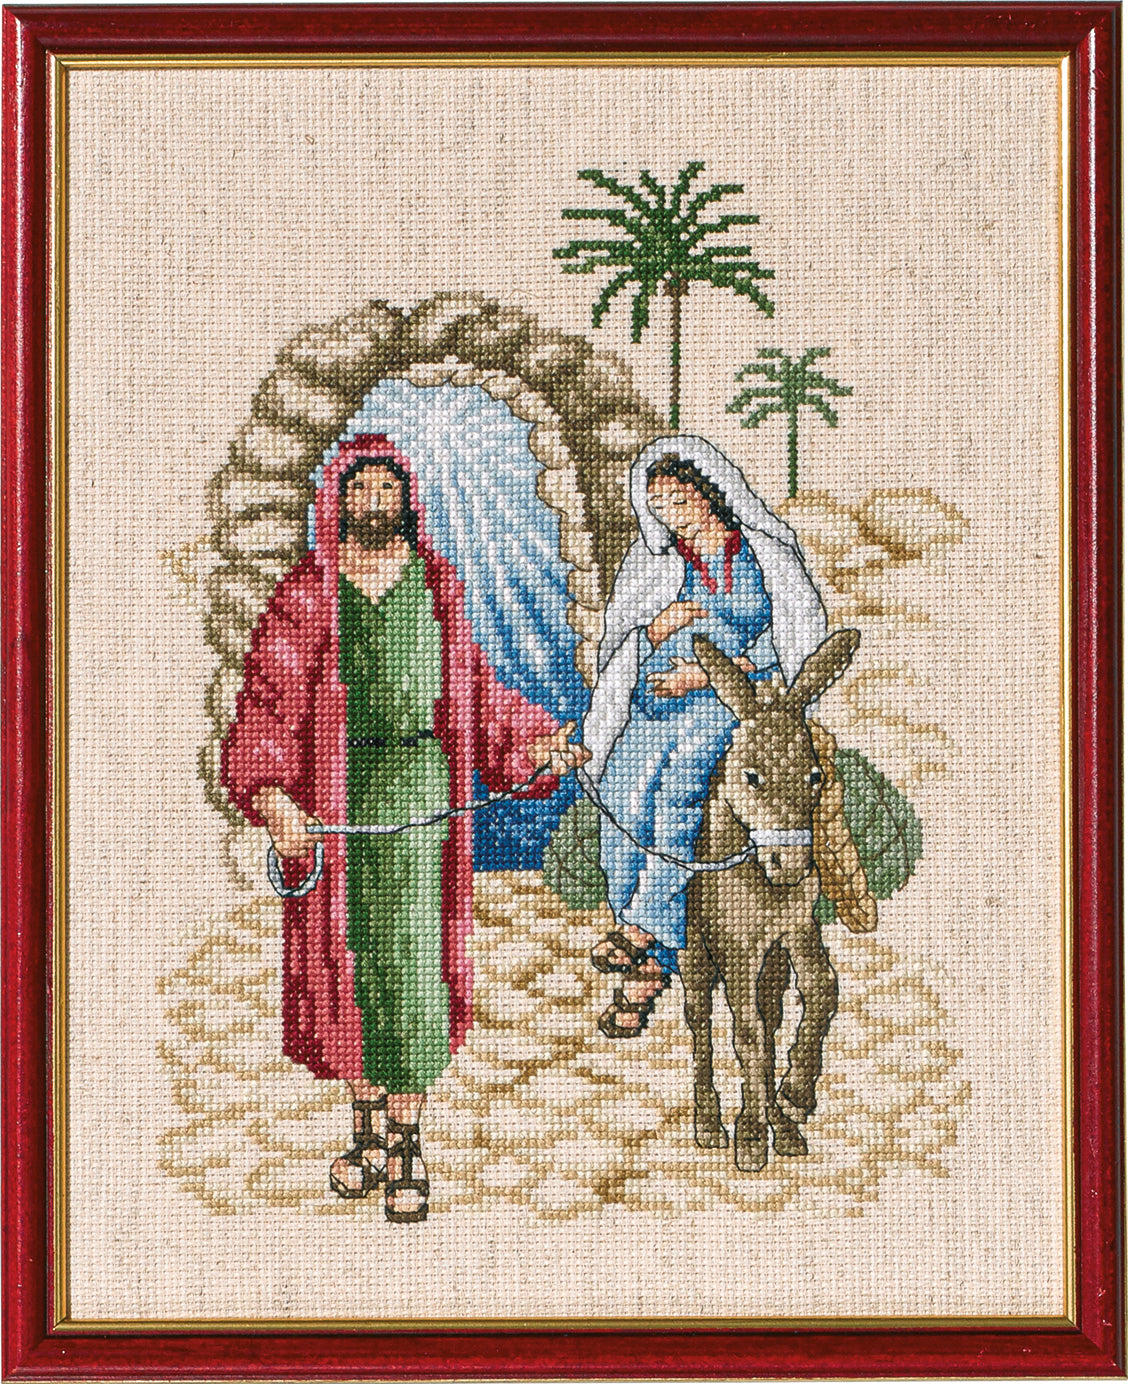 Jósef og Maria